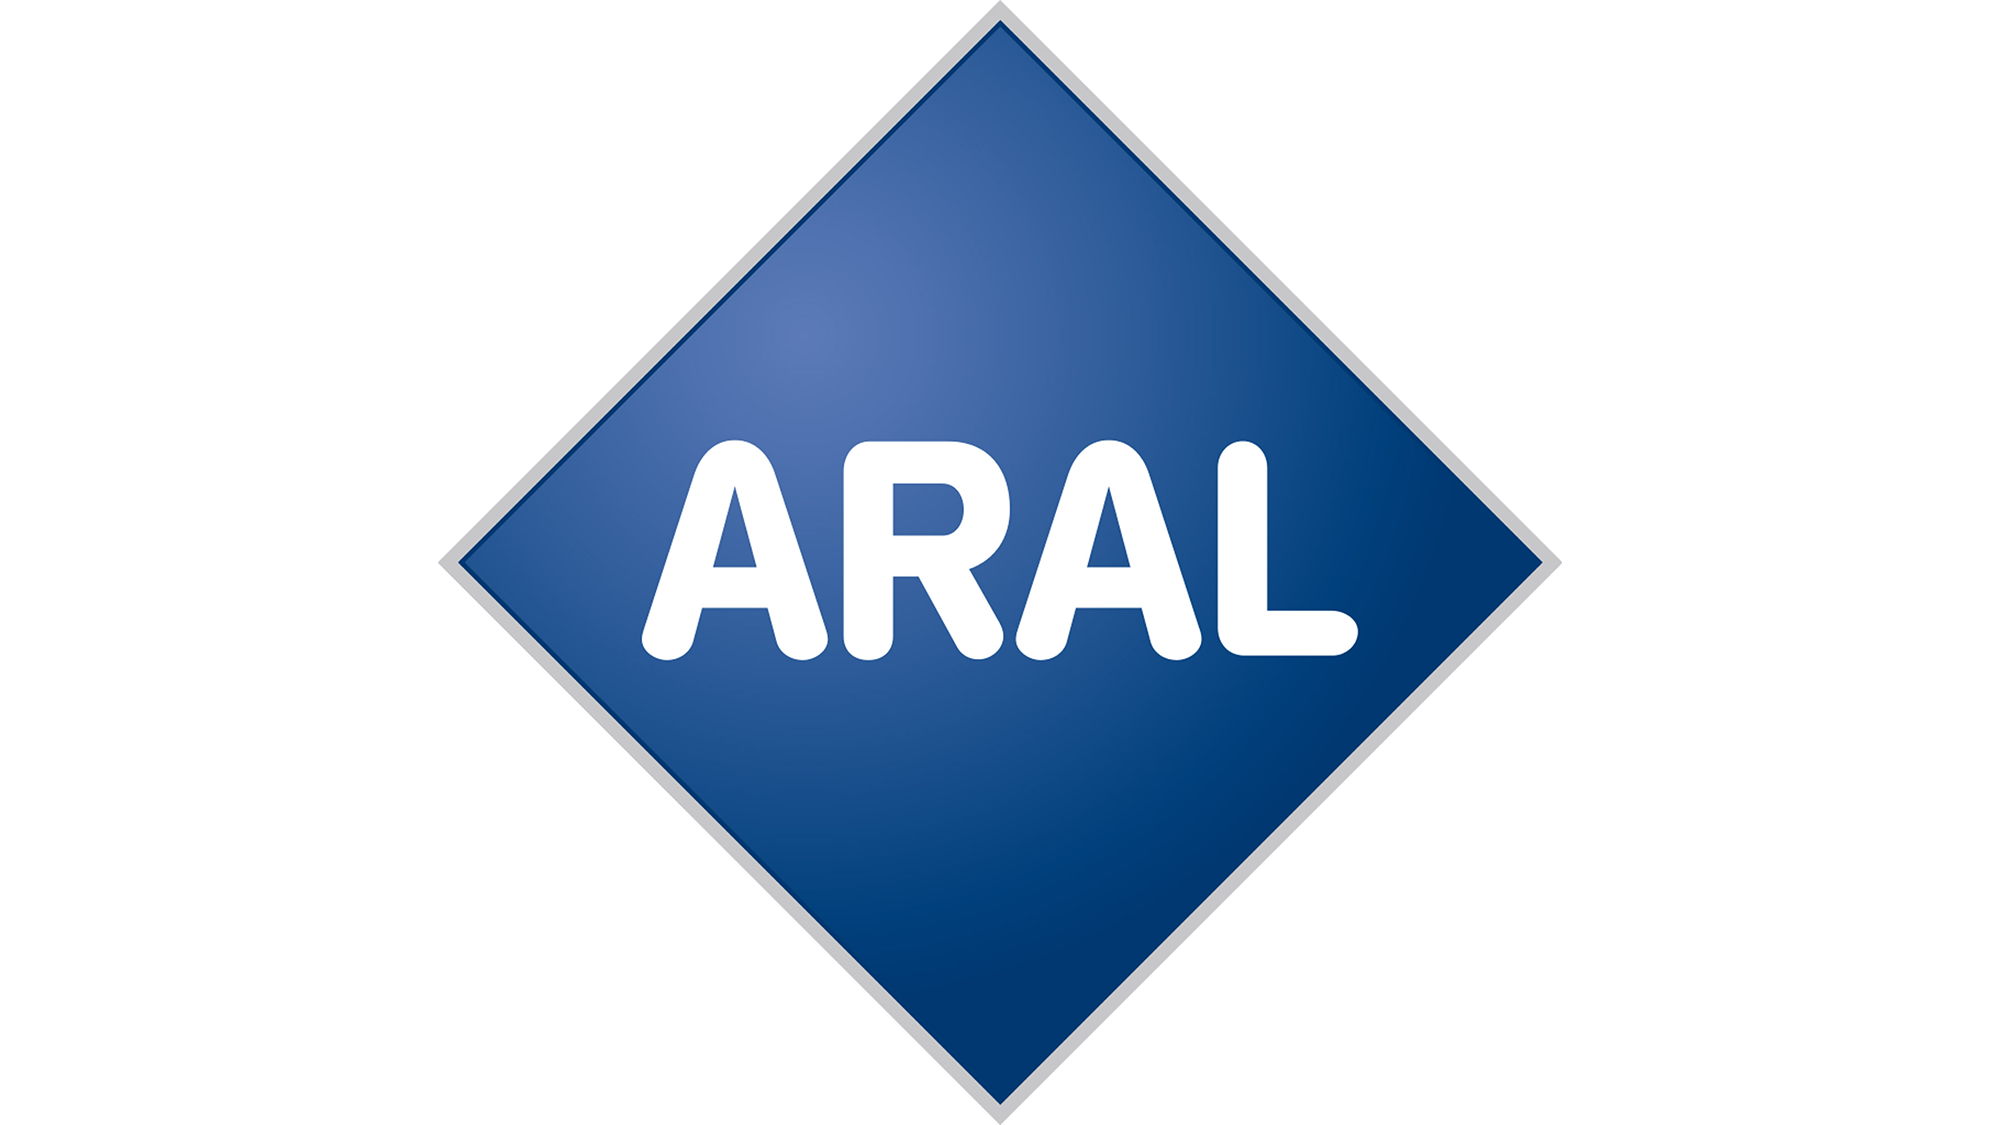 купить масло ARAL в Минске